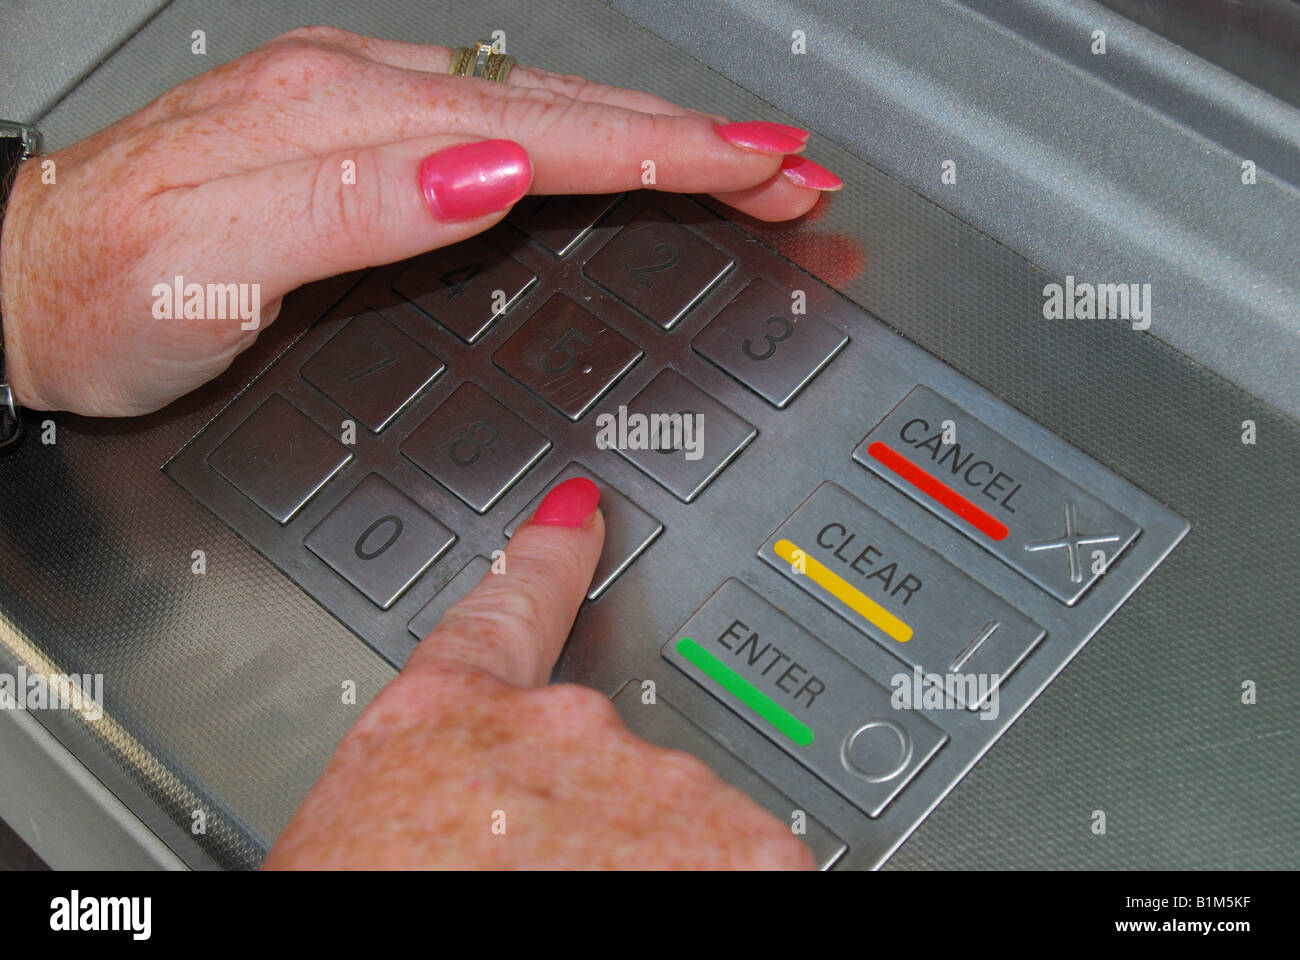 Son code de sécurité gardiennage femme avec sa main sur cash machine, Ascot, Berkshire, Angleterre, Royaume-Uni Banque D'Images